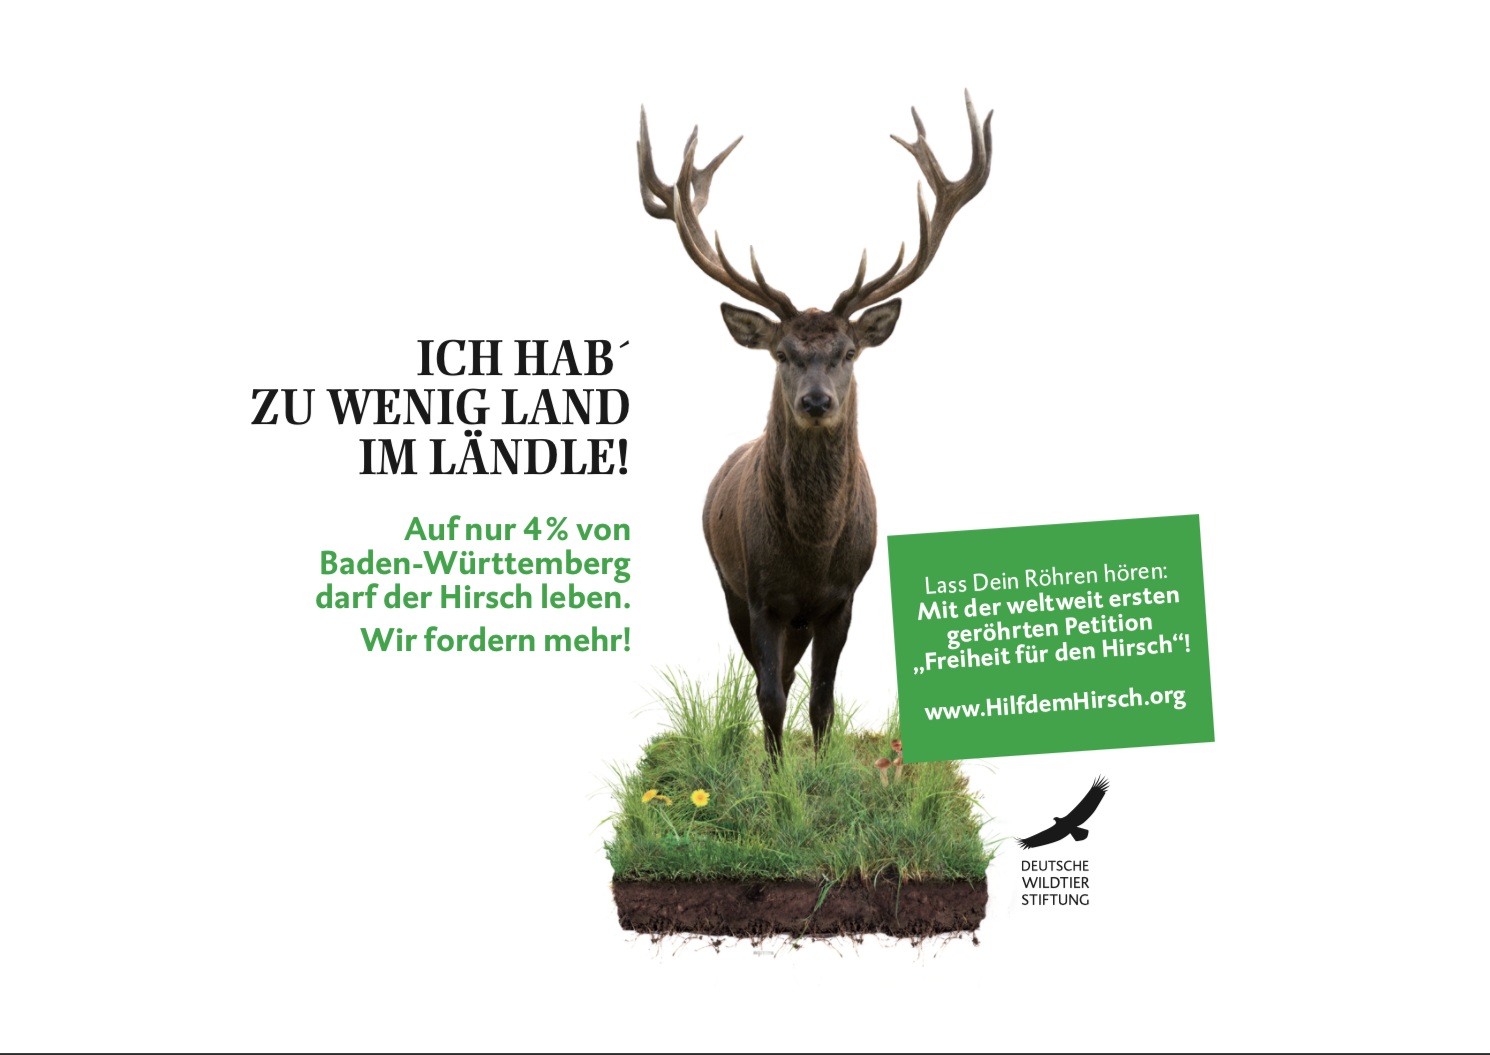 Deutsche Wildtier Stiftung reicht Petition im Landtag ein - WILD UND HUND